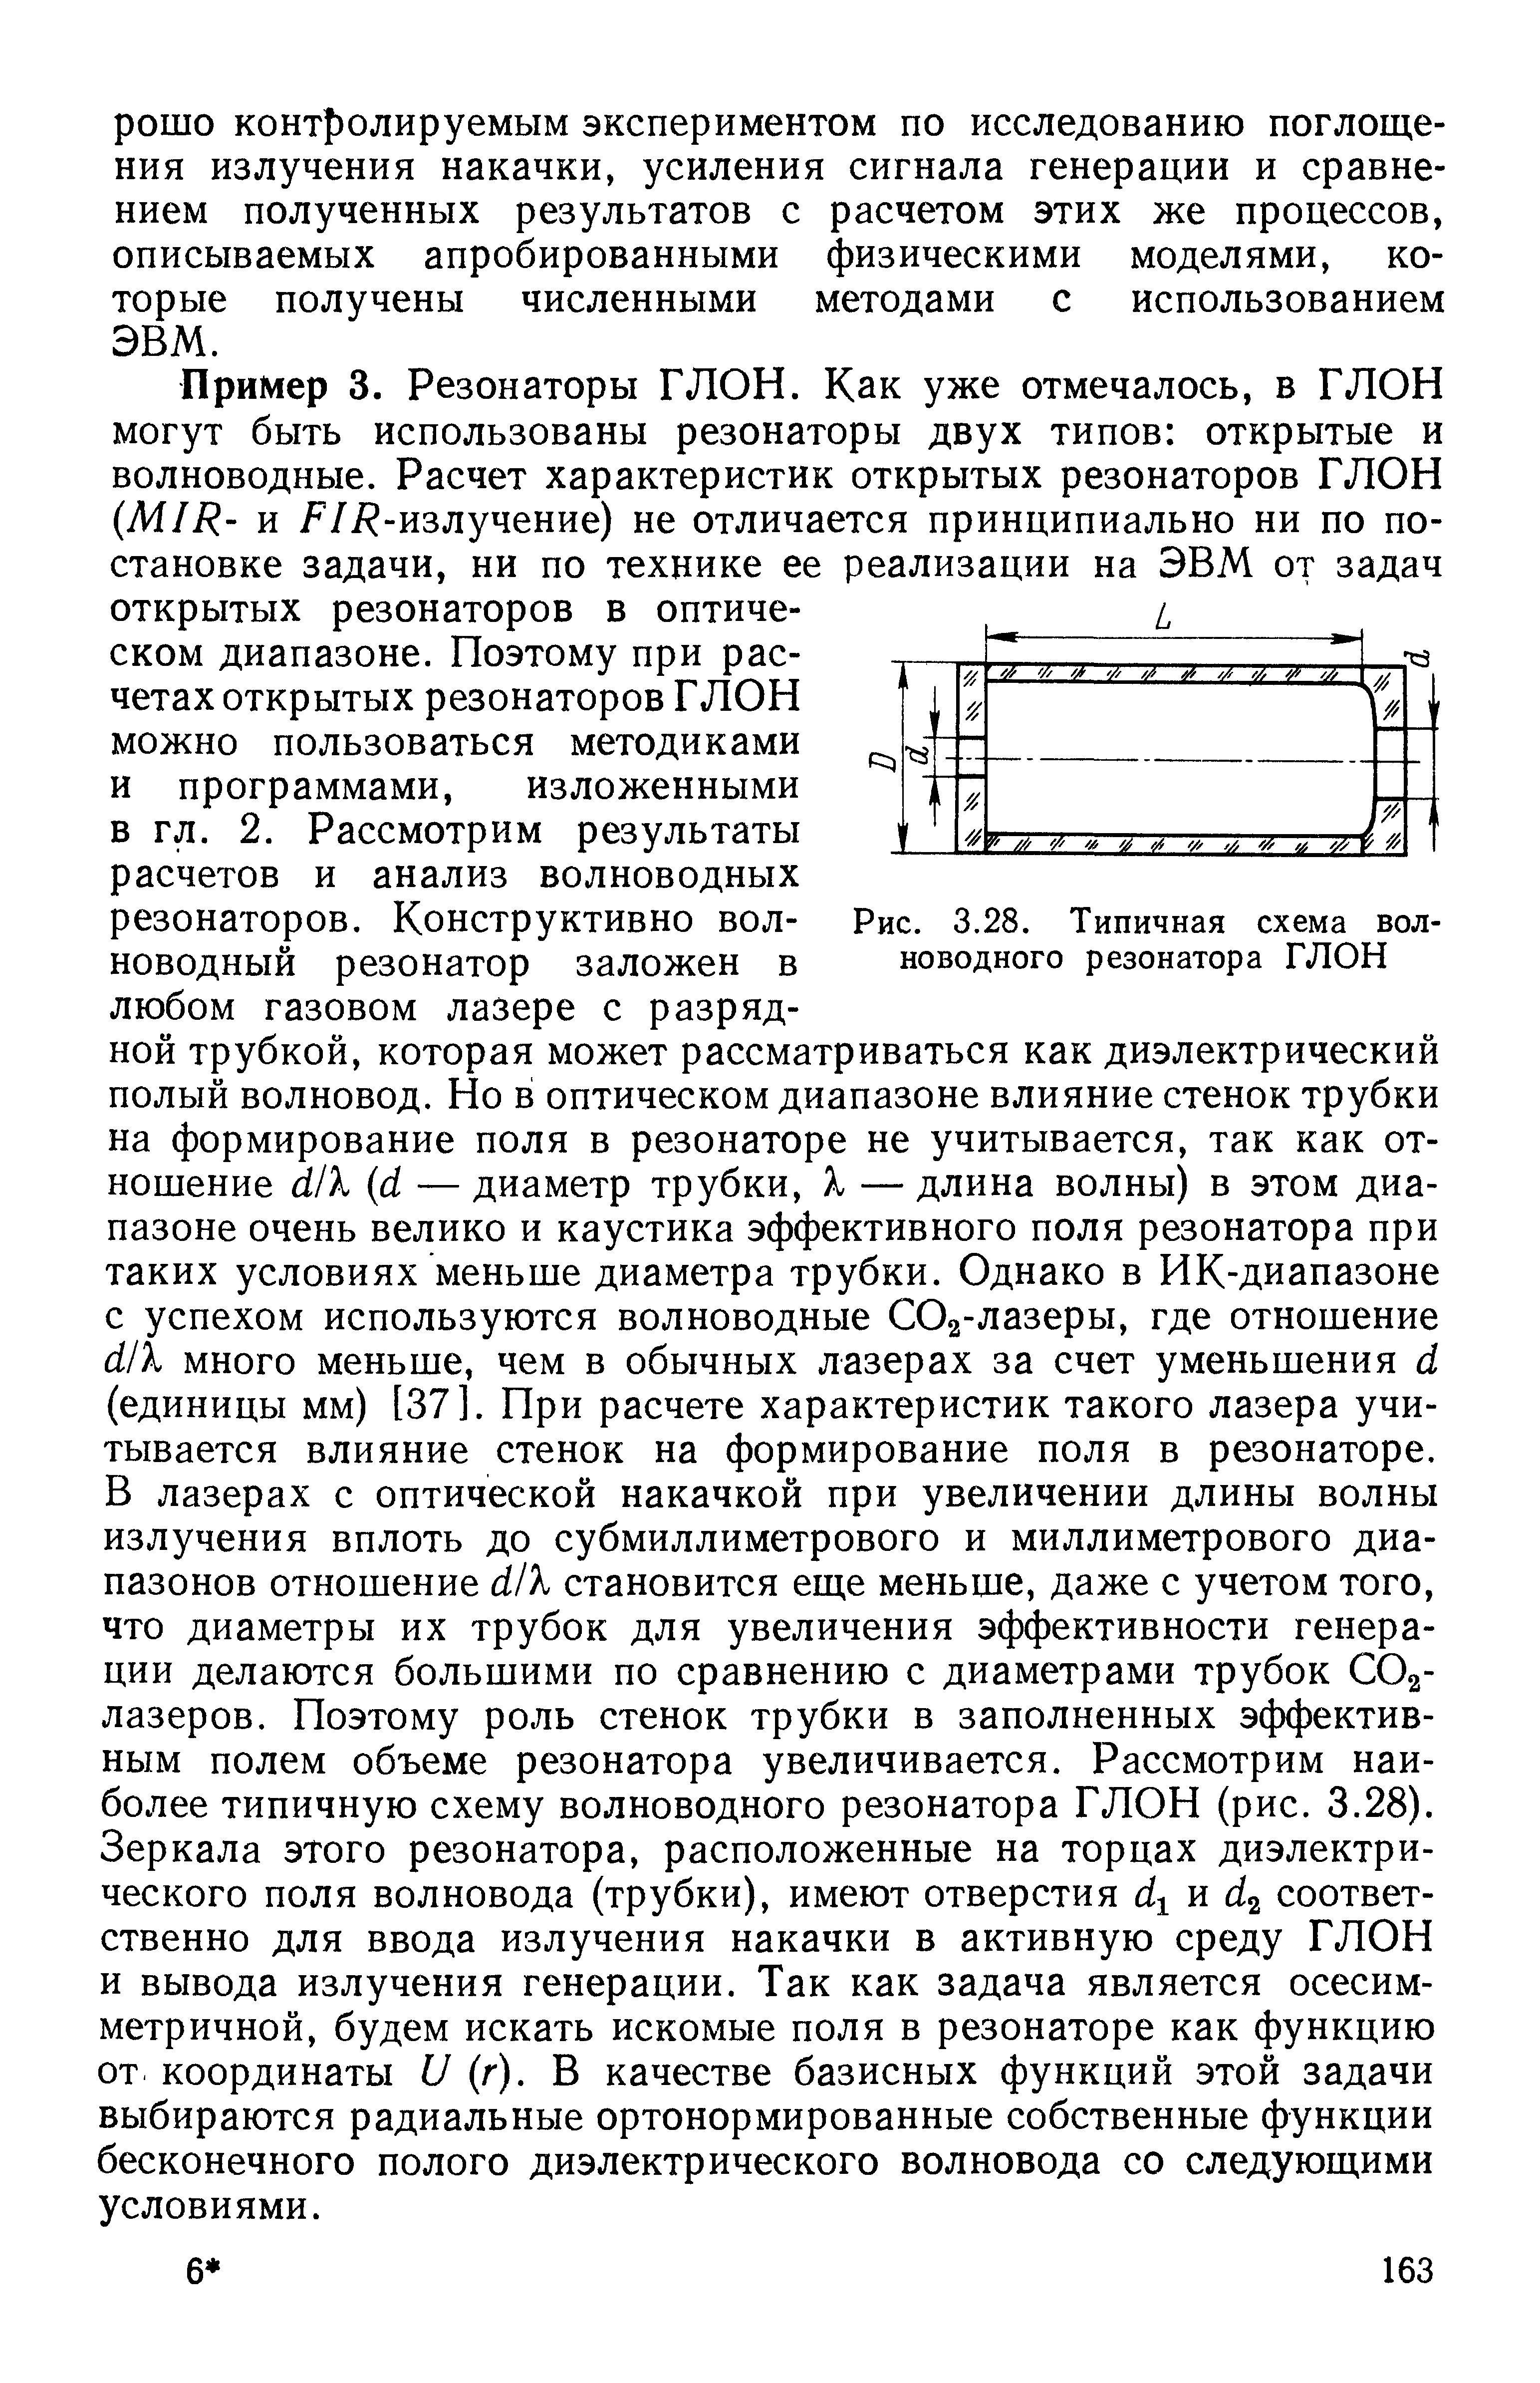 Рис. 3.28. Типичная схема волноводного резонатора ГЛОН
